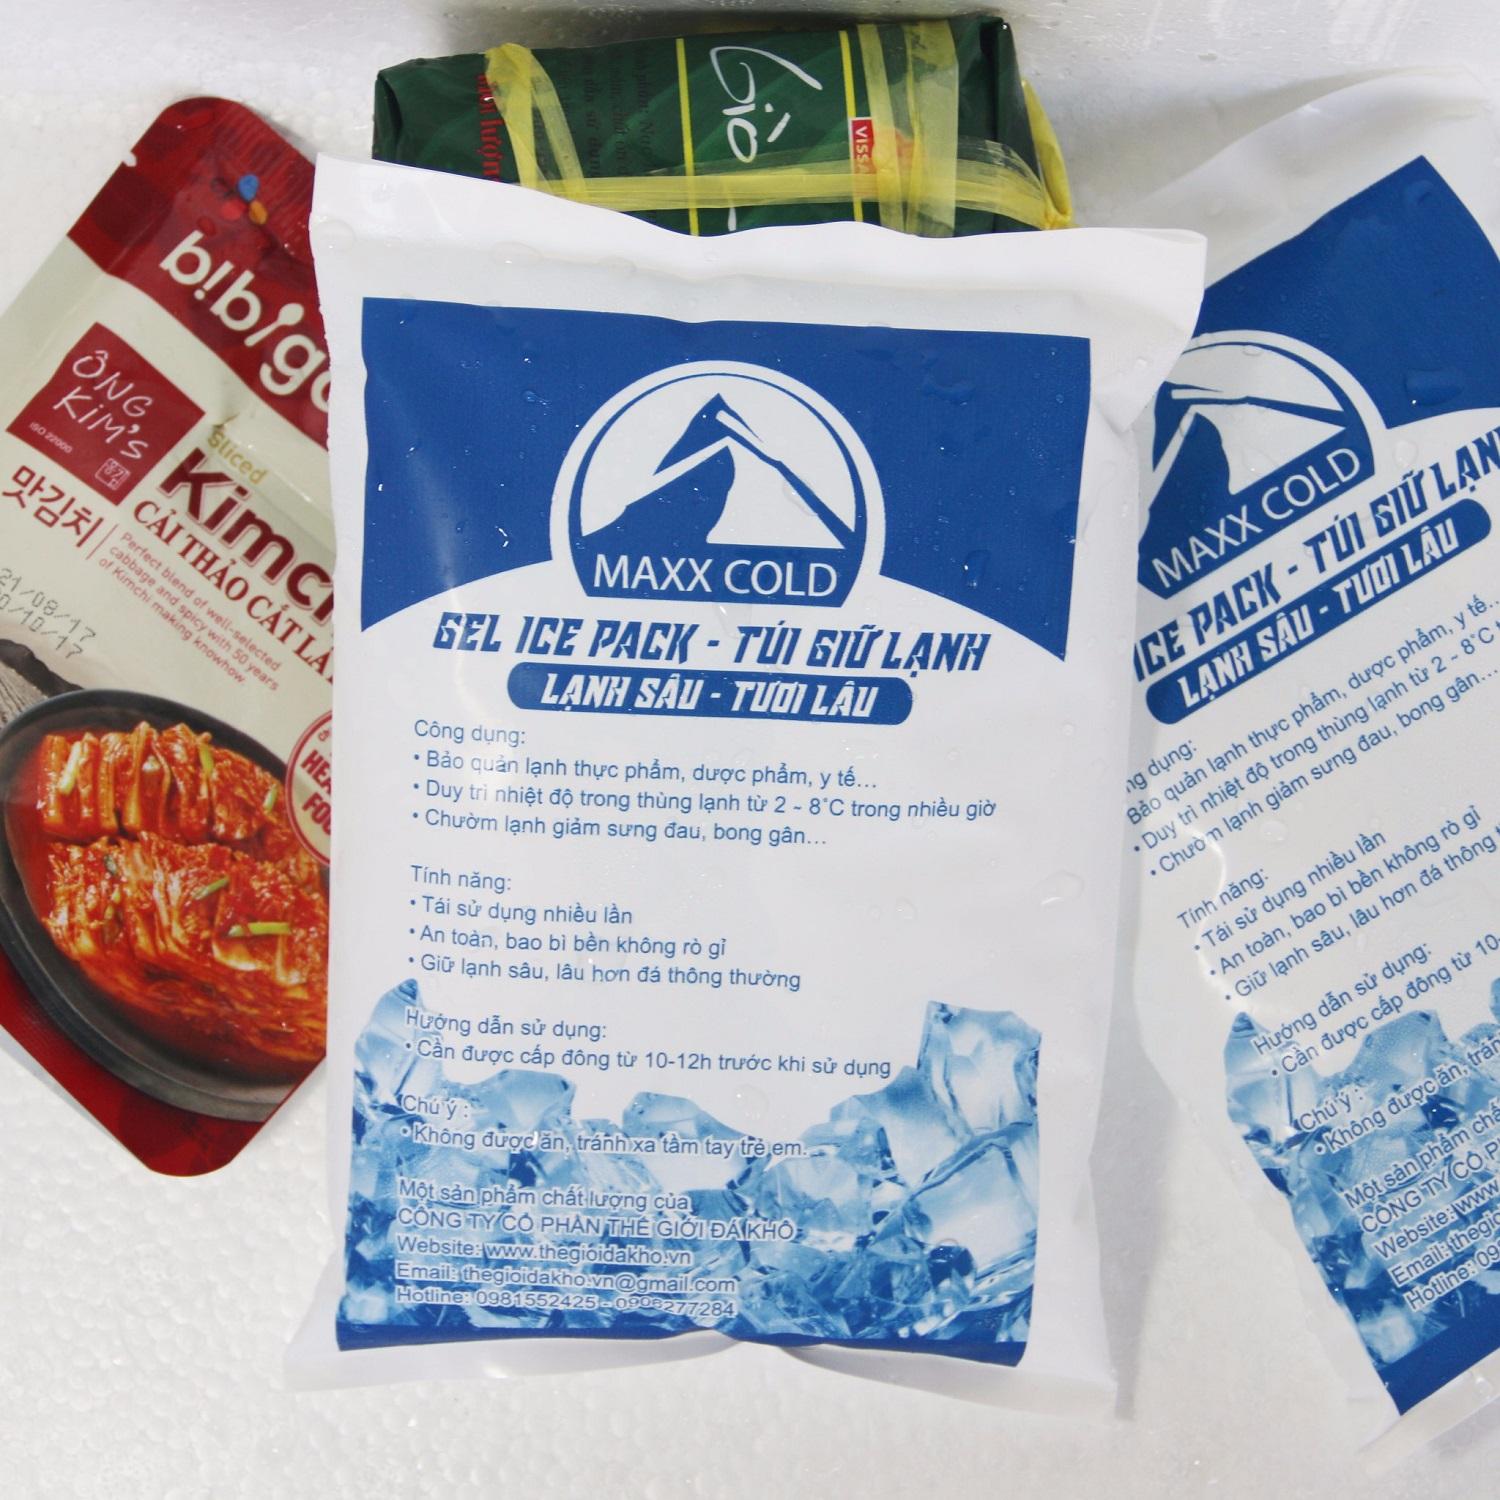 Túi đá khô gel Maxx Cold 500g giữ lạnh thực phẩm, thuốc, bảo quản sữa mẹ